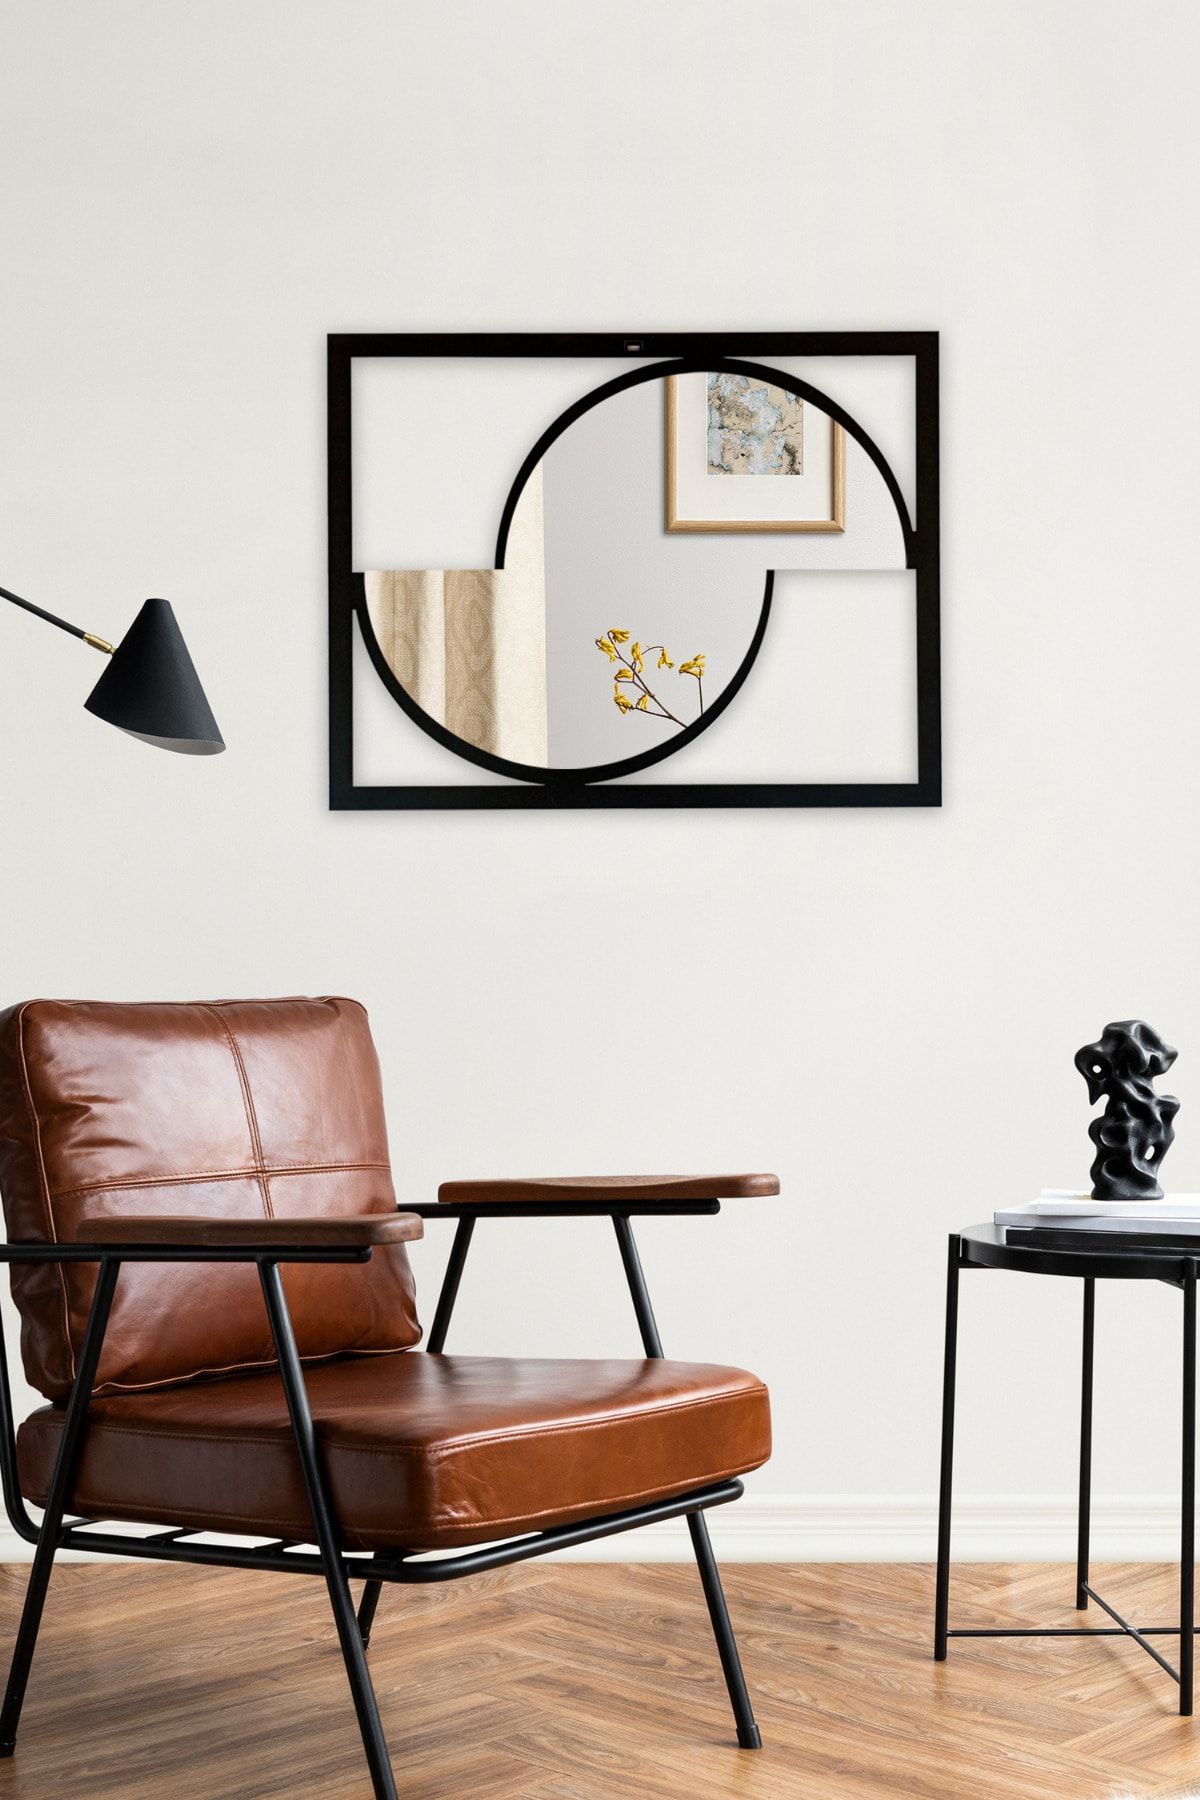 RARART Siyah Çerçeveli Dekoratif Asimetrik Duvar Aynası - Evin Bütün Odalarına Uygun Ayna Modeli